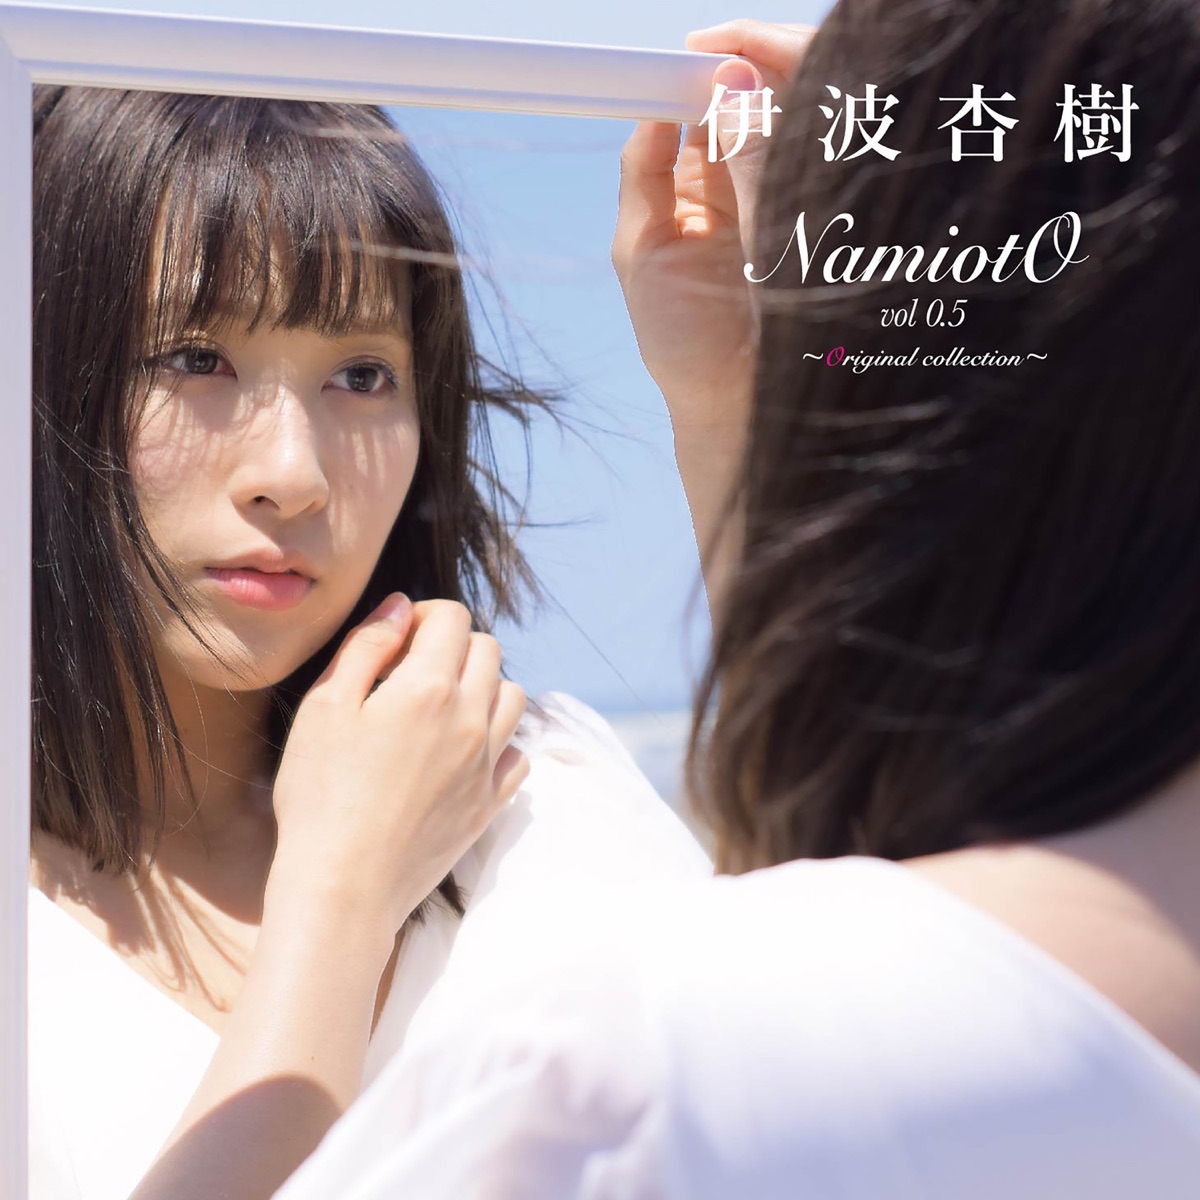 伊波杏樹の「NamiotO vol.0.5 ~Original collection~「Fly Out!!」」を ...